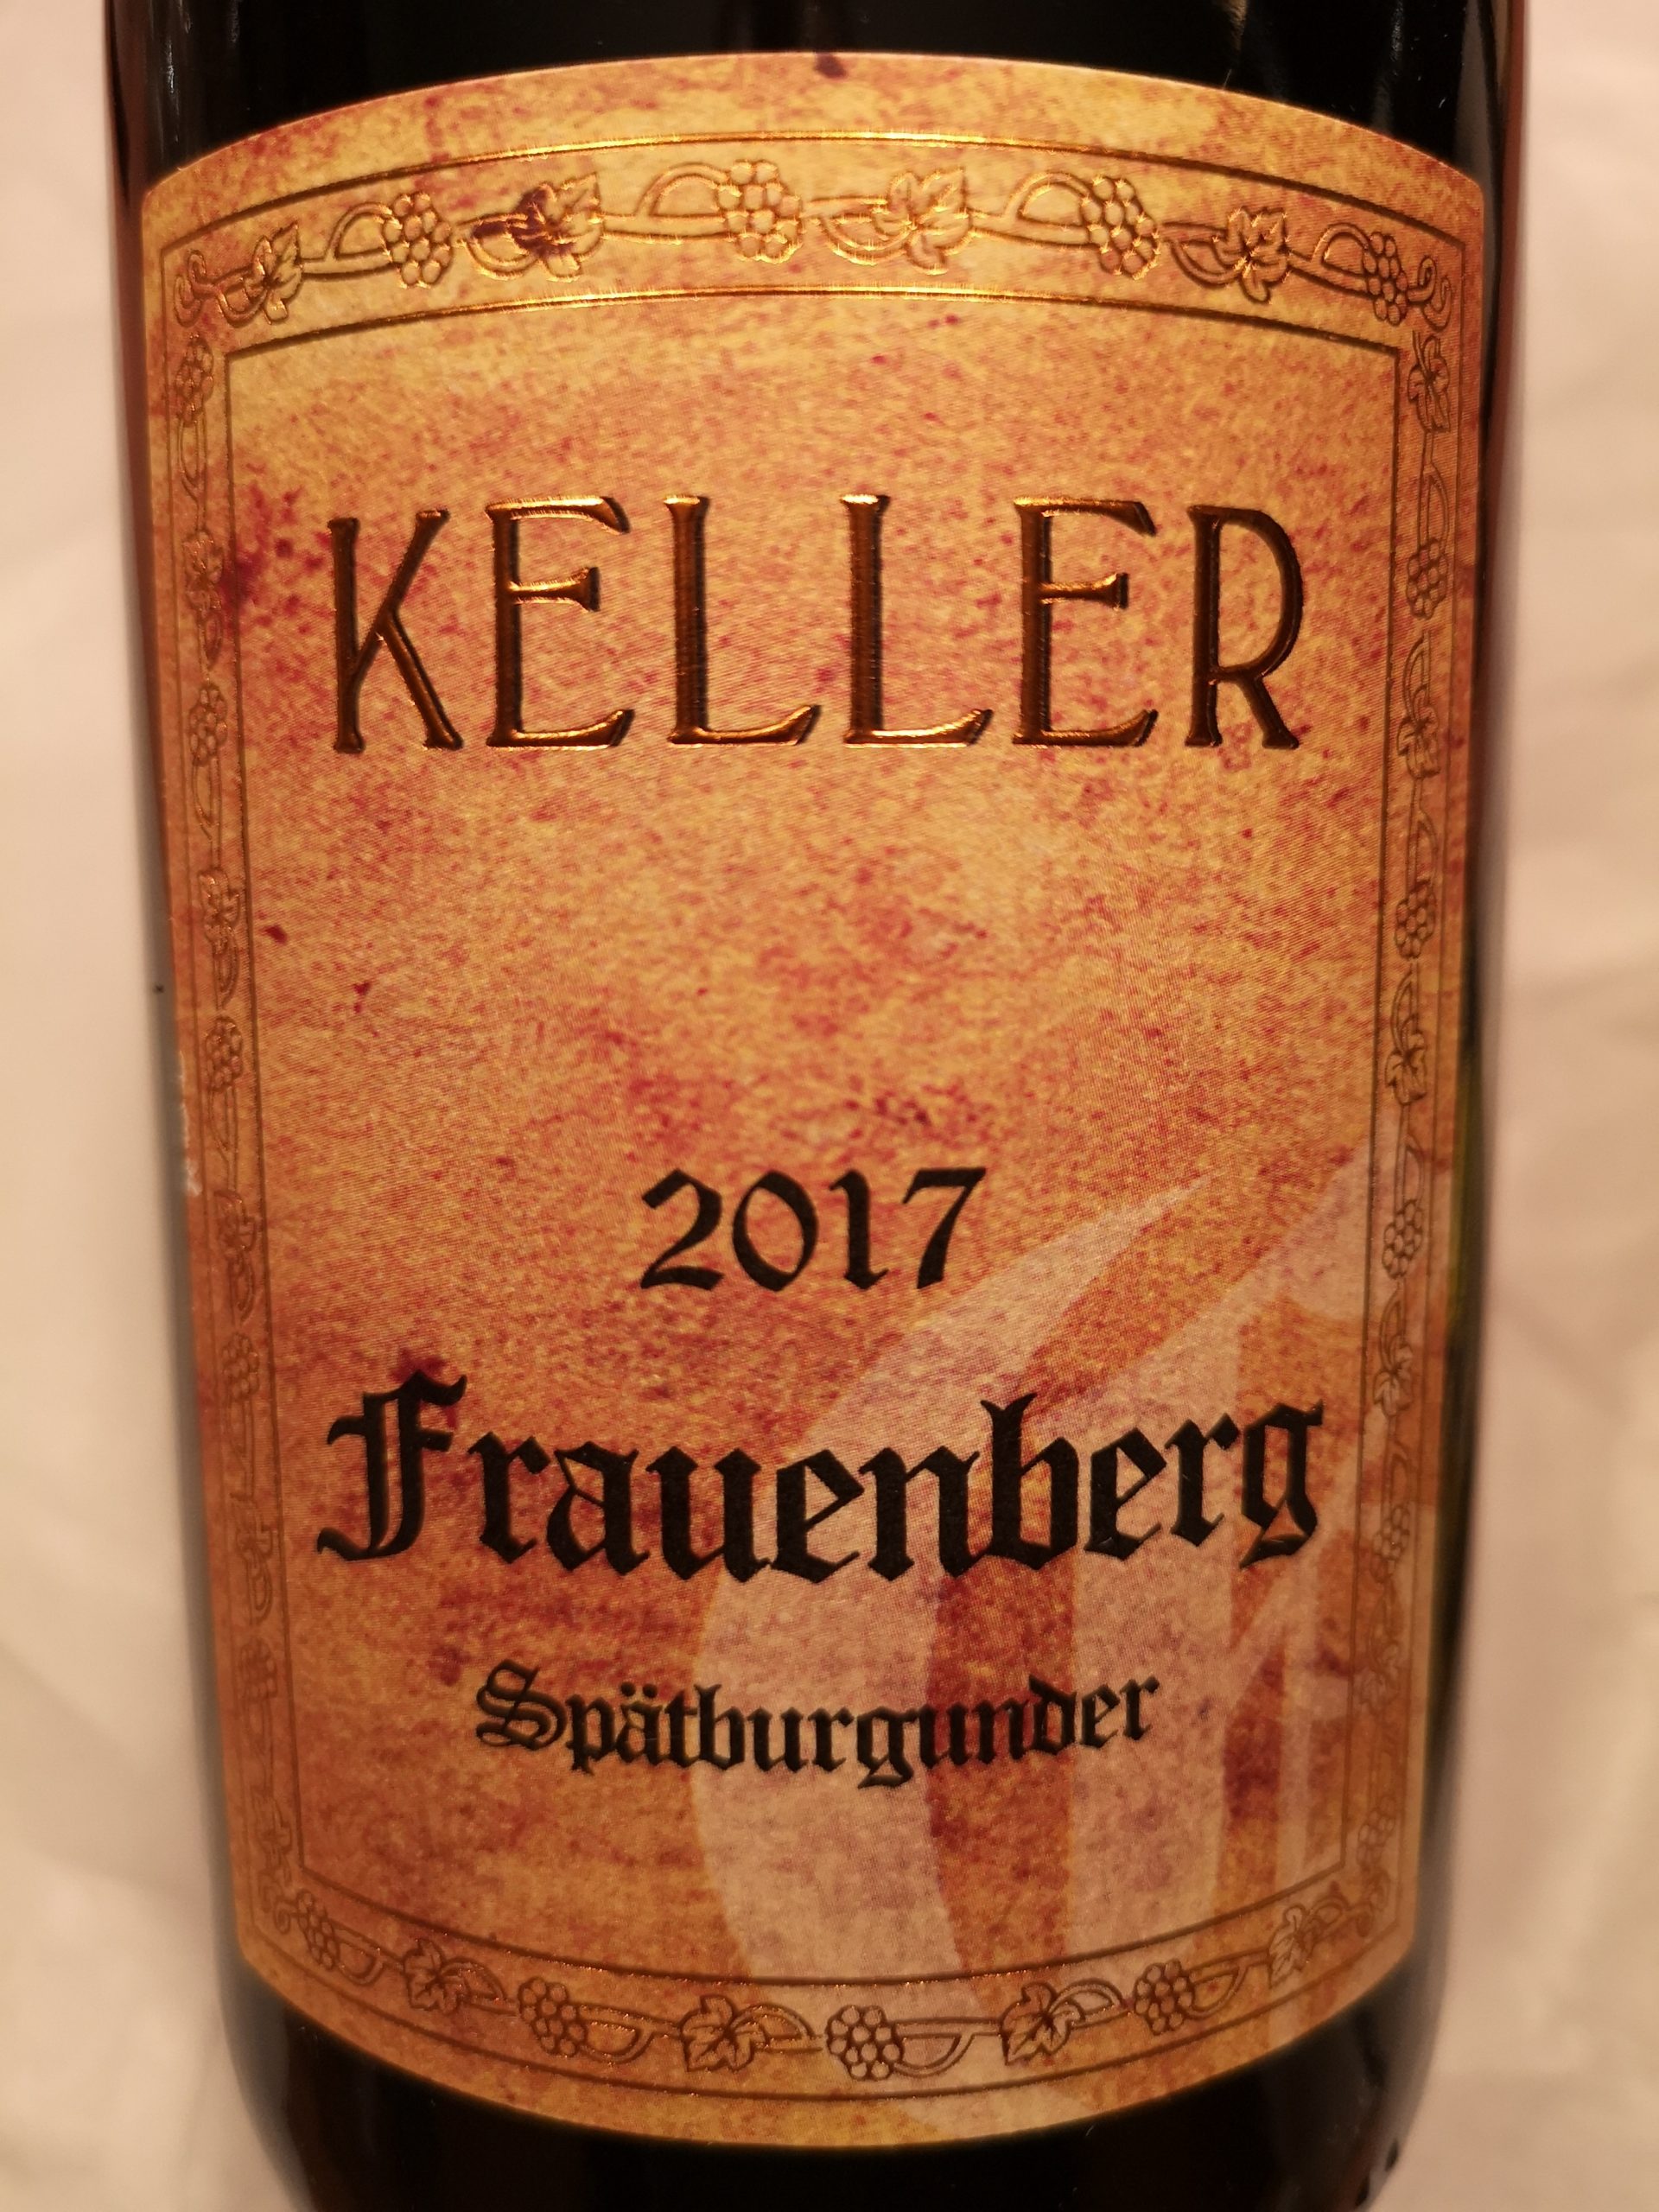 2017 Spätburgunder Frauenberg GG | Keller